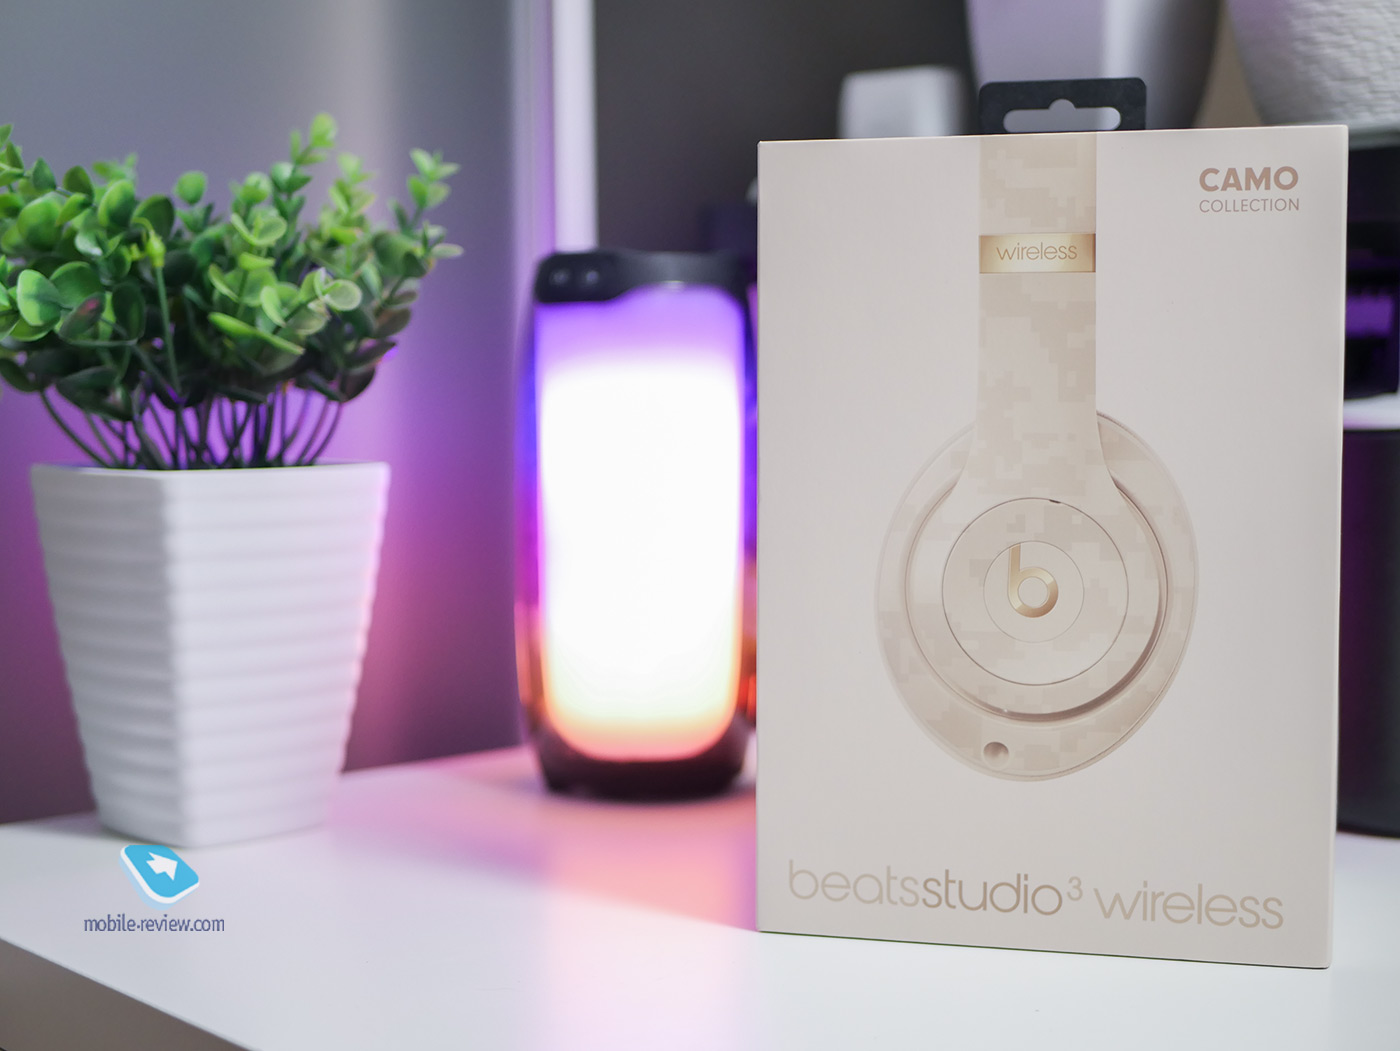 Стоит ли покупать beats studio 3 wireless в 2020 году?